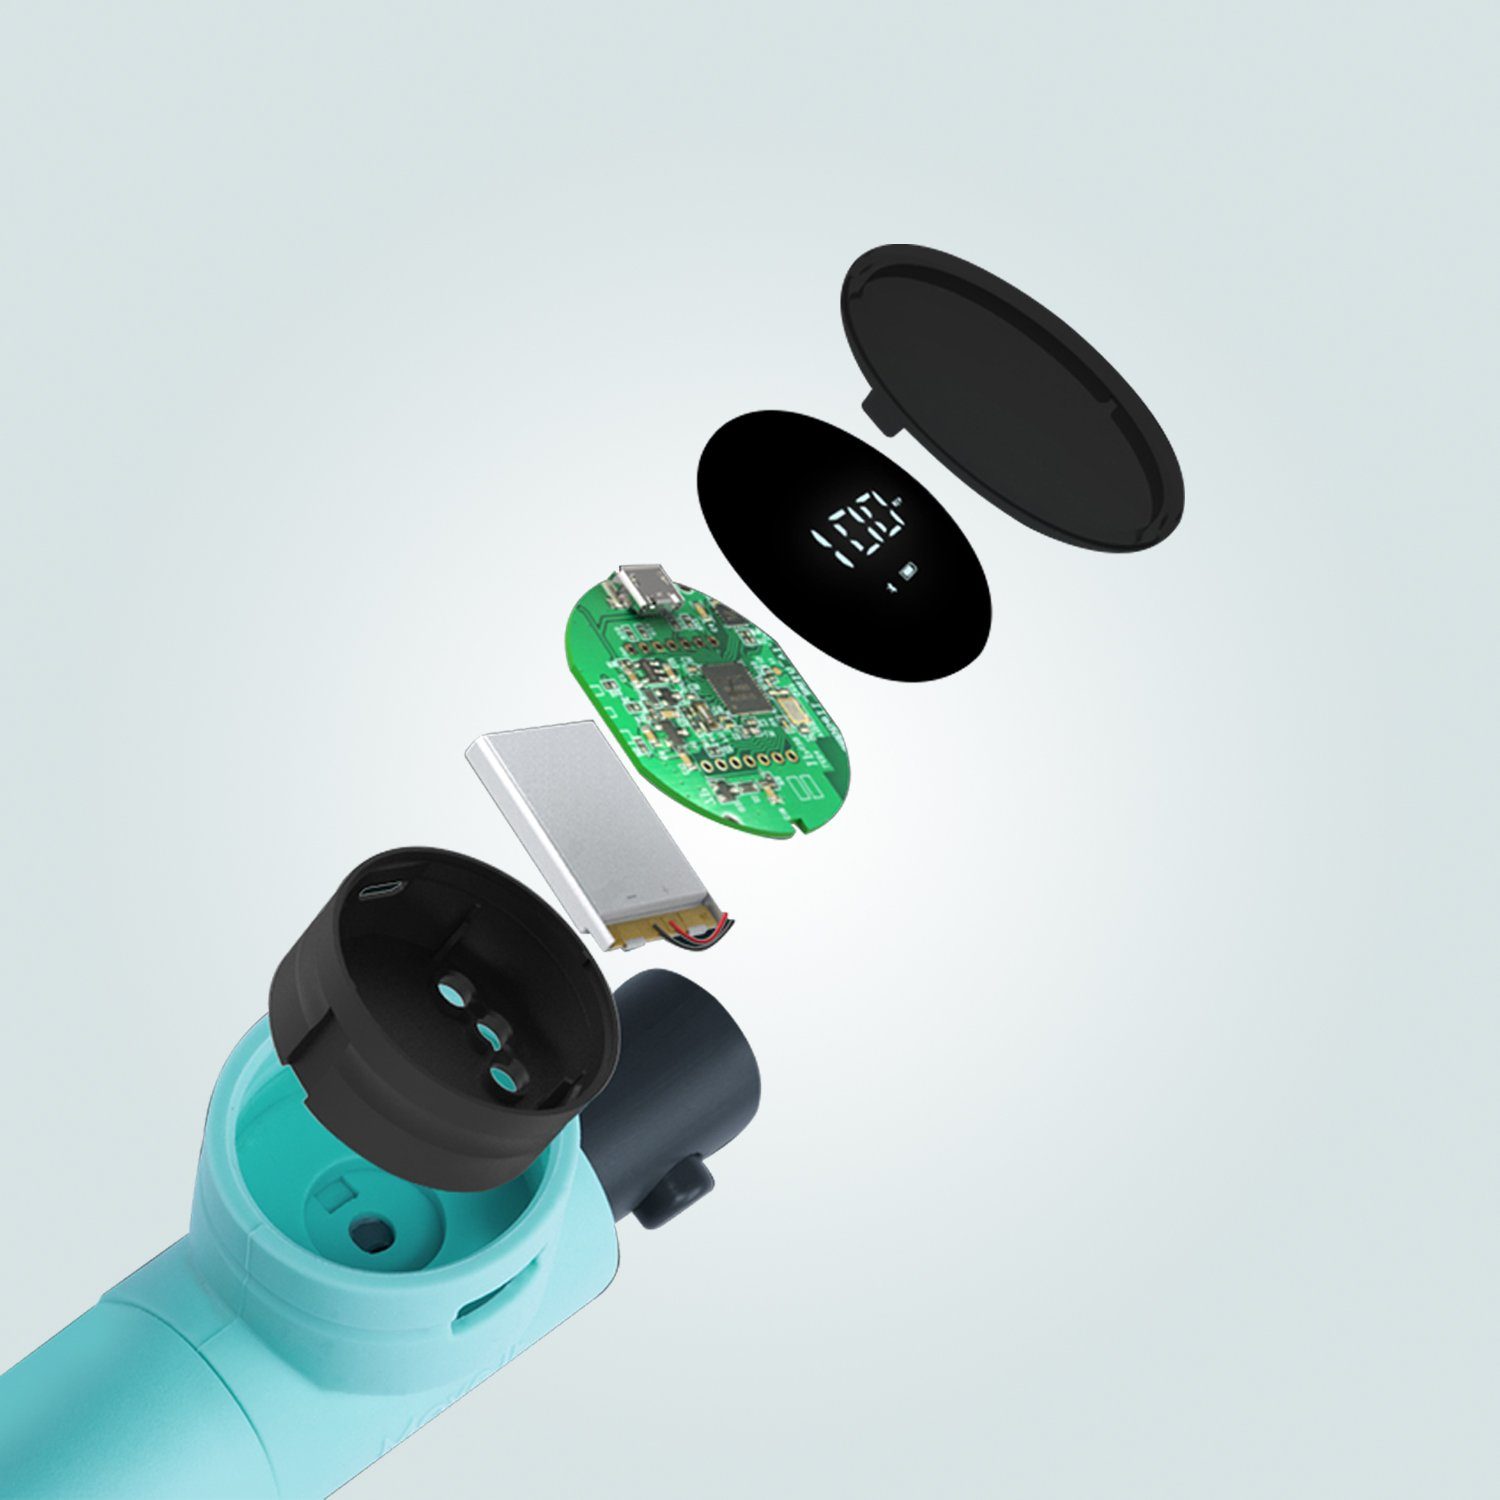 AsVIVA Hula-Hoop-Reifen Smart MOVE-IT AsVIVA Fitness-App Fitnessreifen Kalorienmesser, HH1 kompatibel,EVA-Schaumstoffummantelung,LED-Display Zeitmesser, Bluetooth Bluetooth, (mit Durchmesser), Hula Hoop variabler